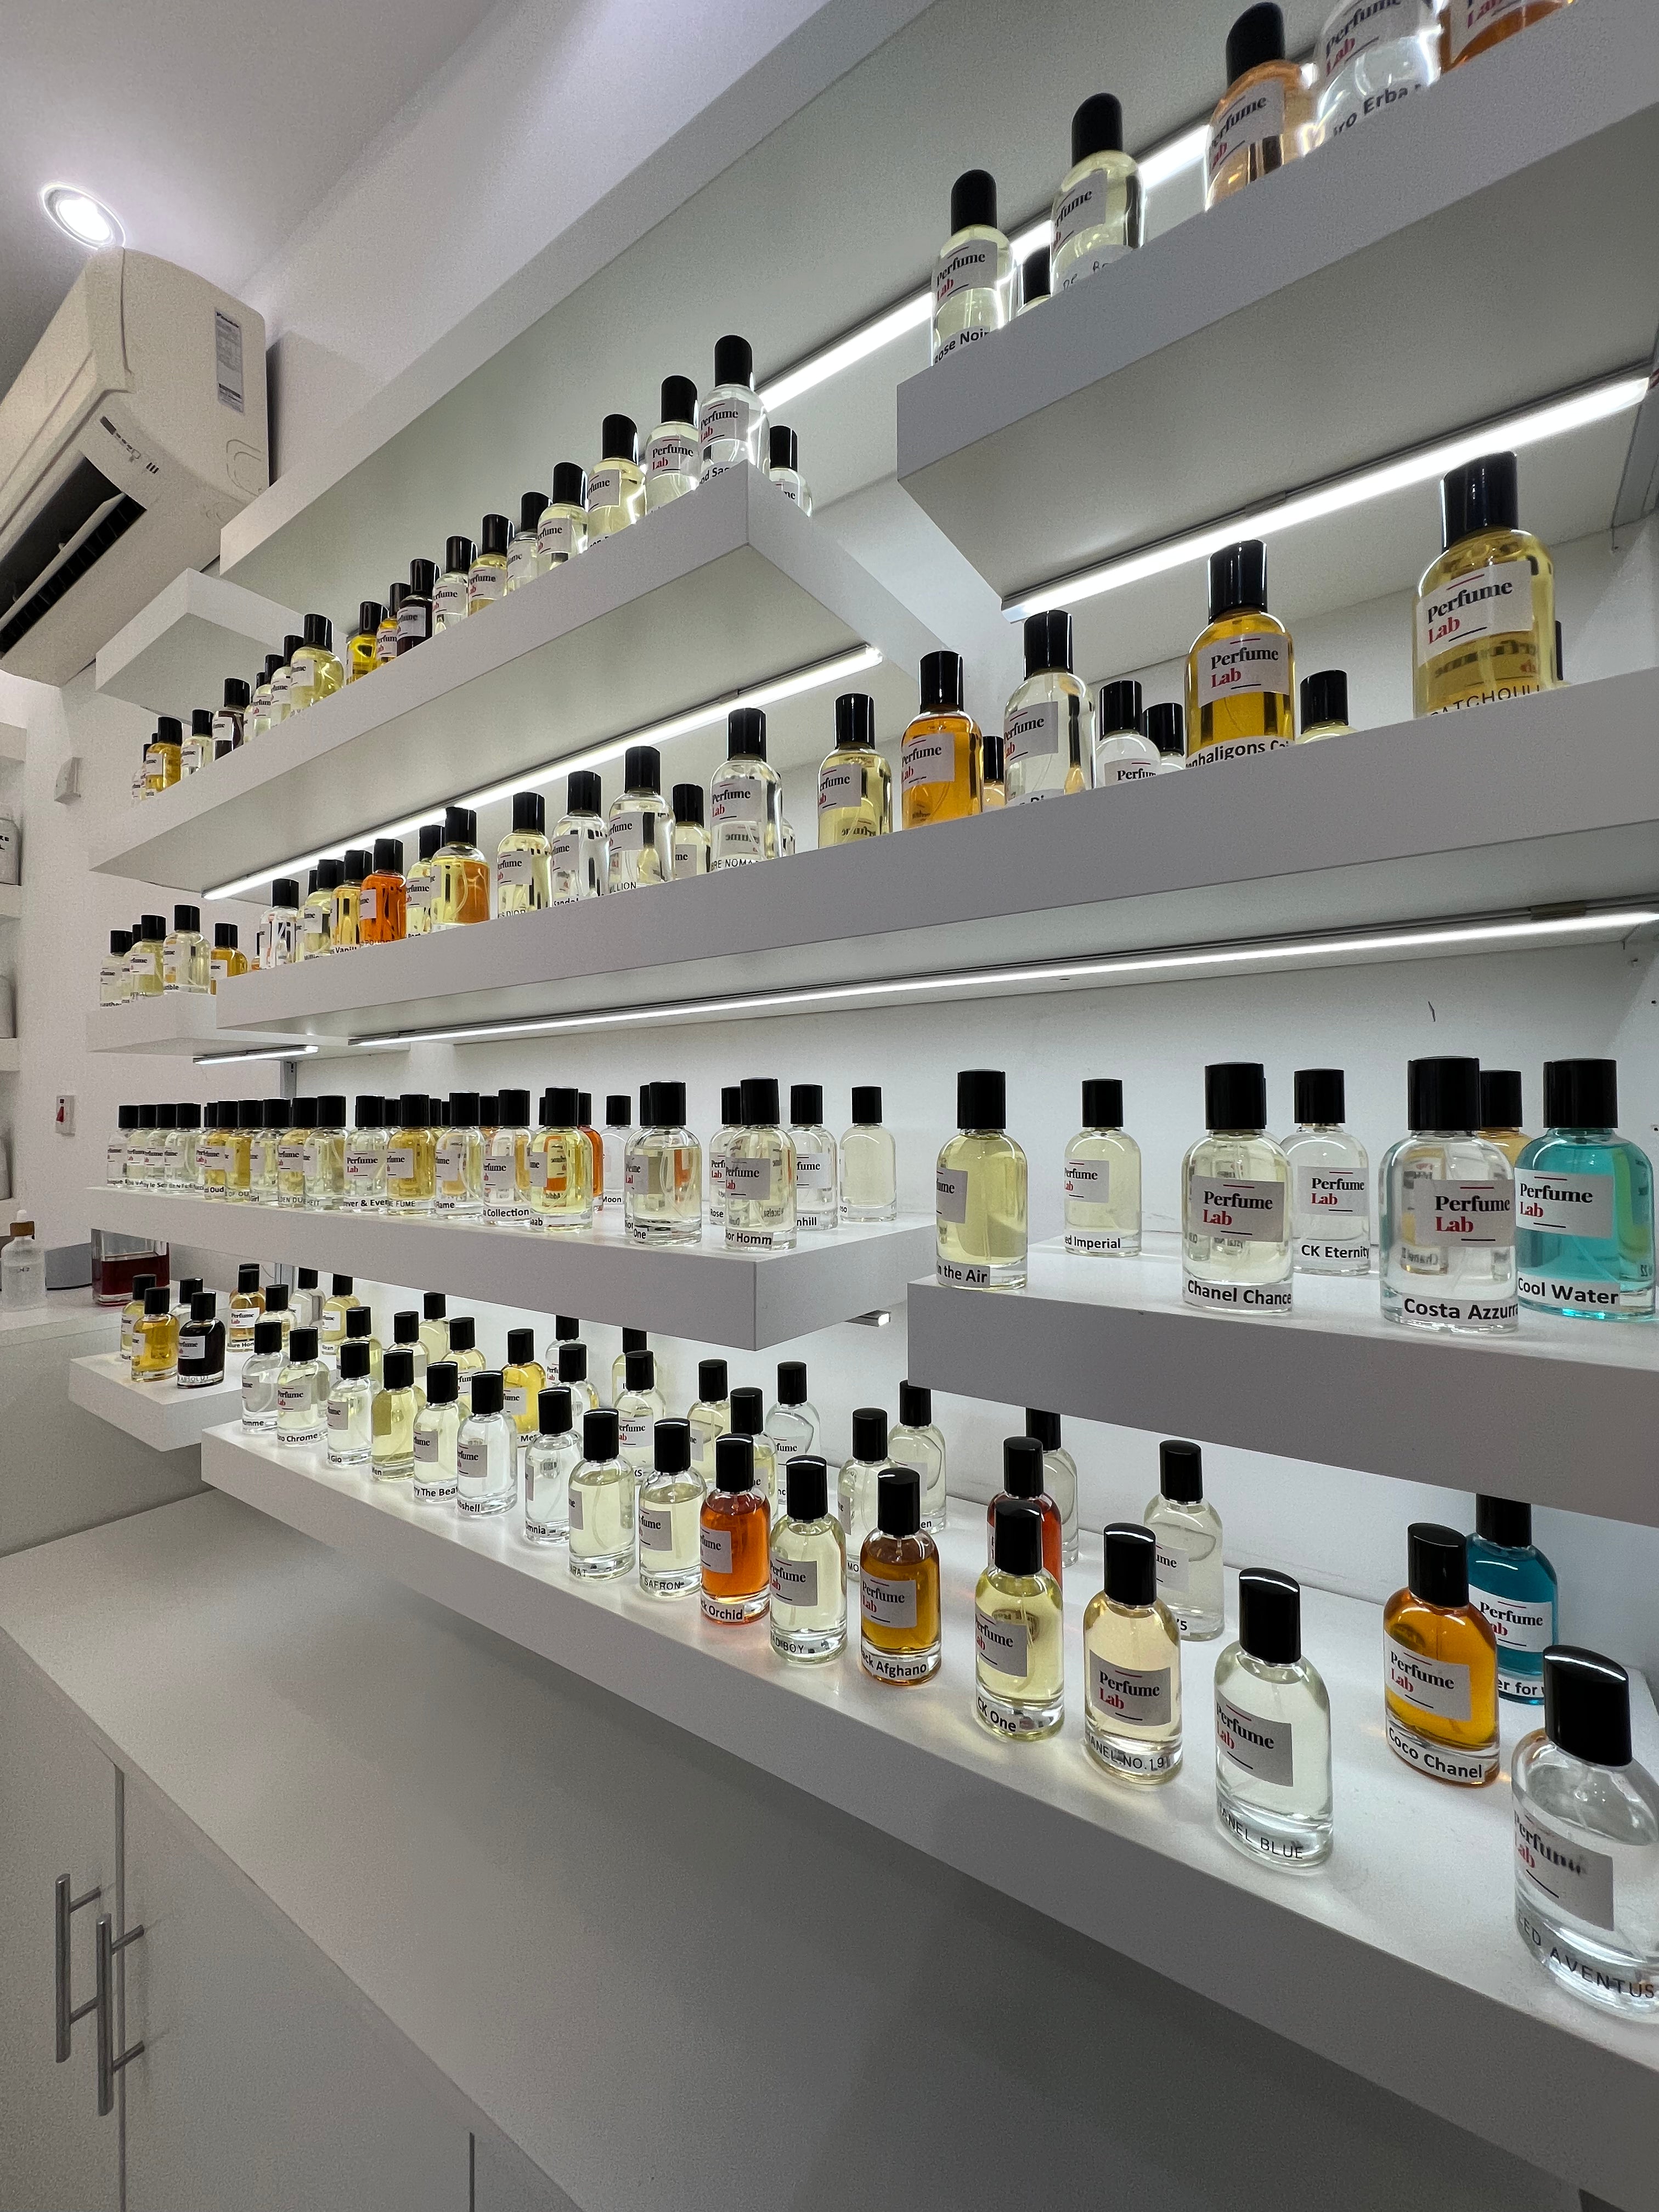 Parfum Lab Store